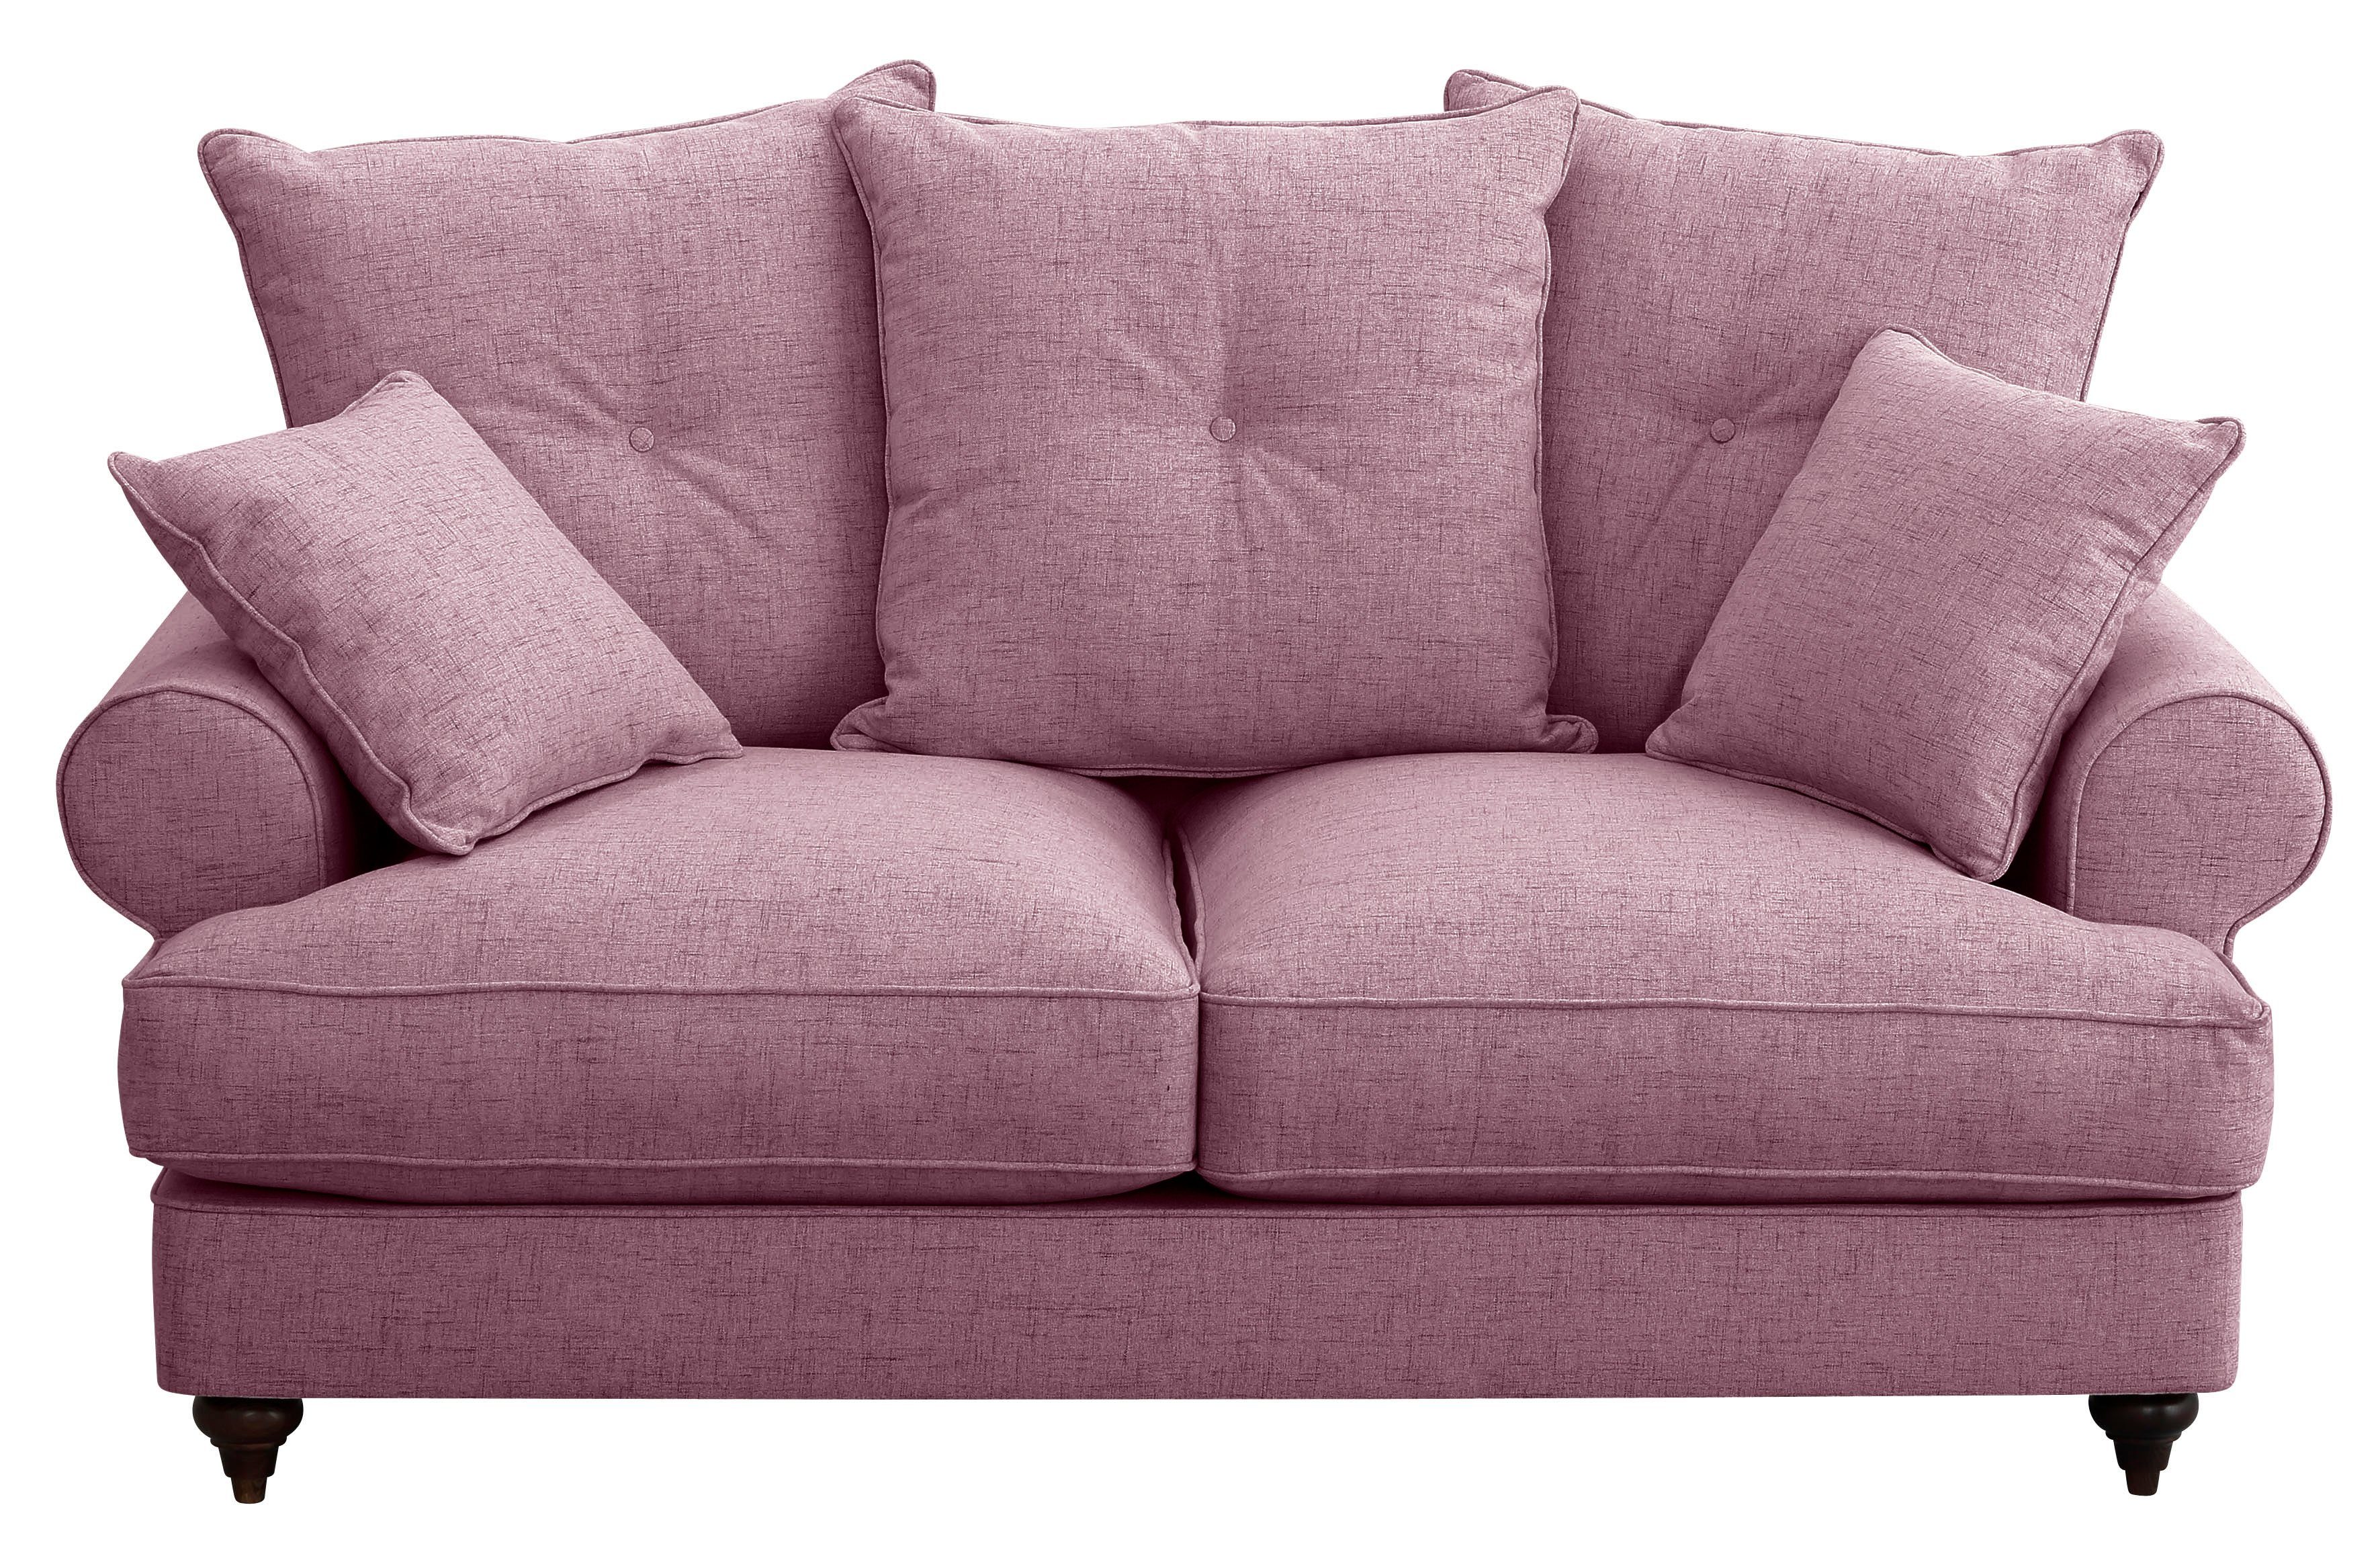 Home affaire 2-Sitzer Bloomer, mit hochwertigem Kaltschaum, in verschiedenen Farben erhältlich violet